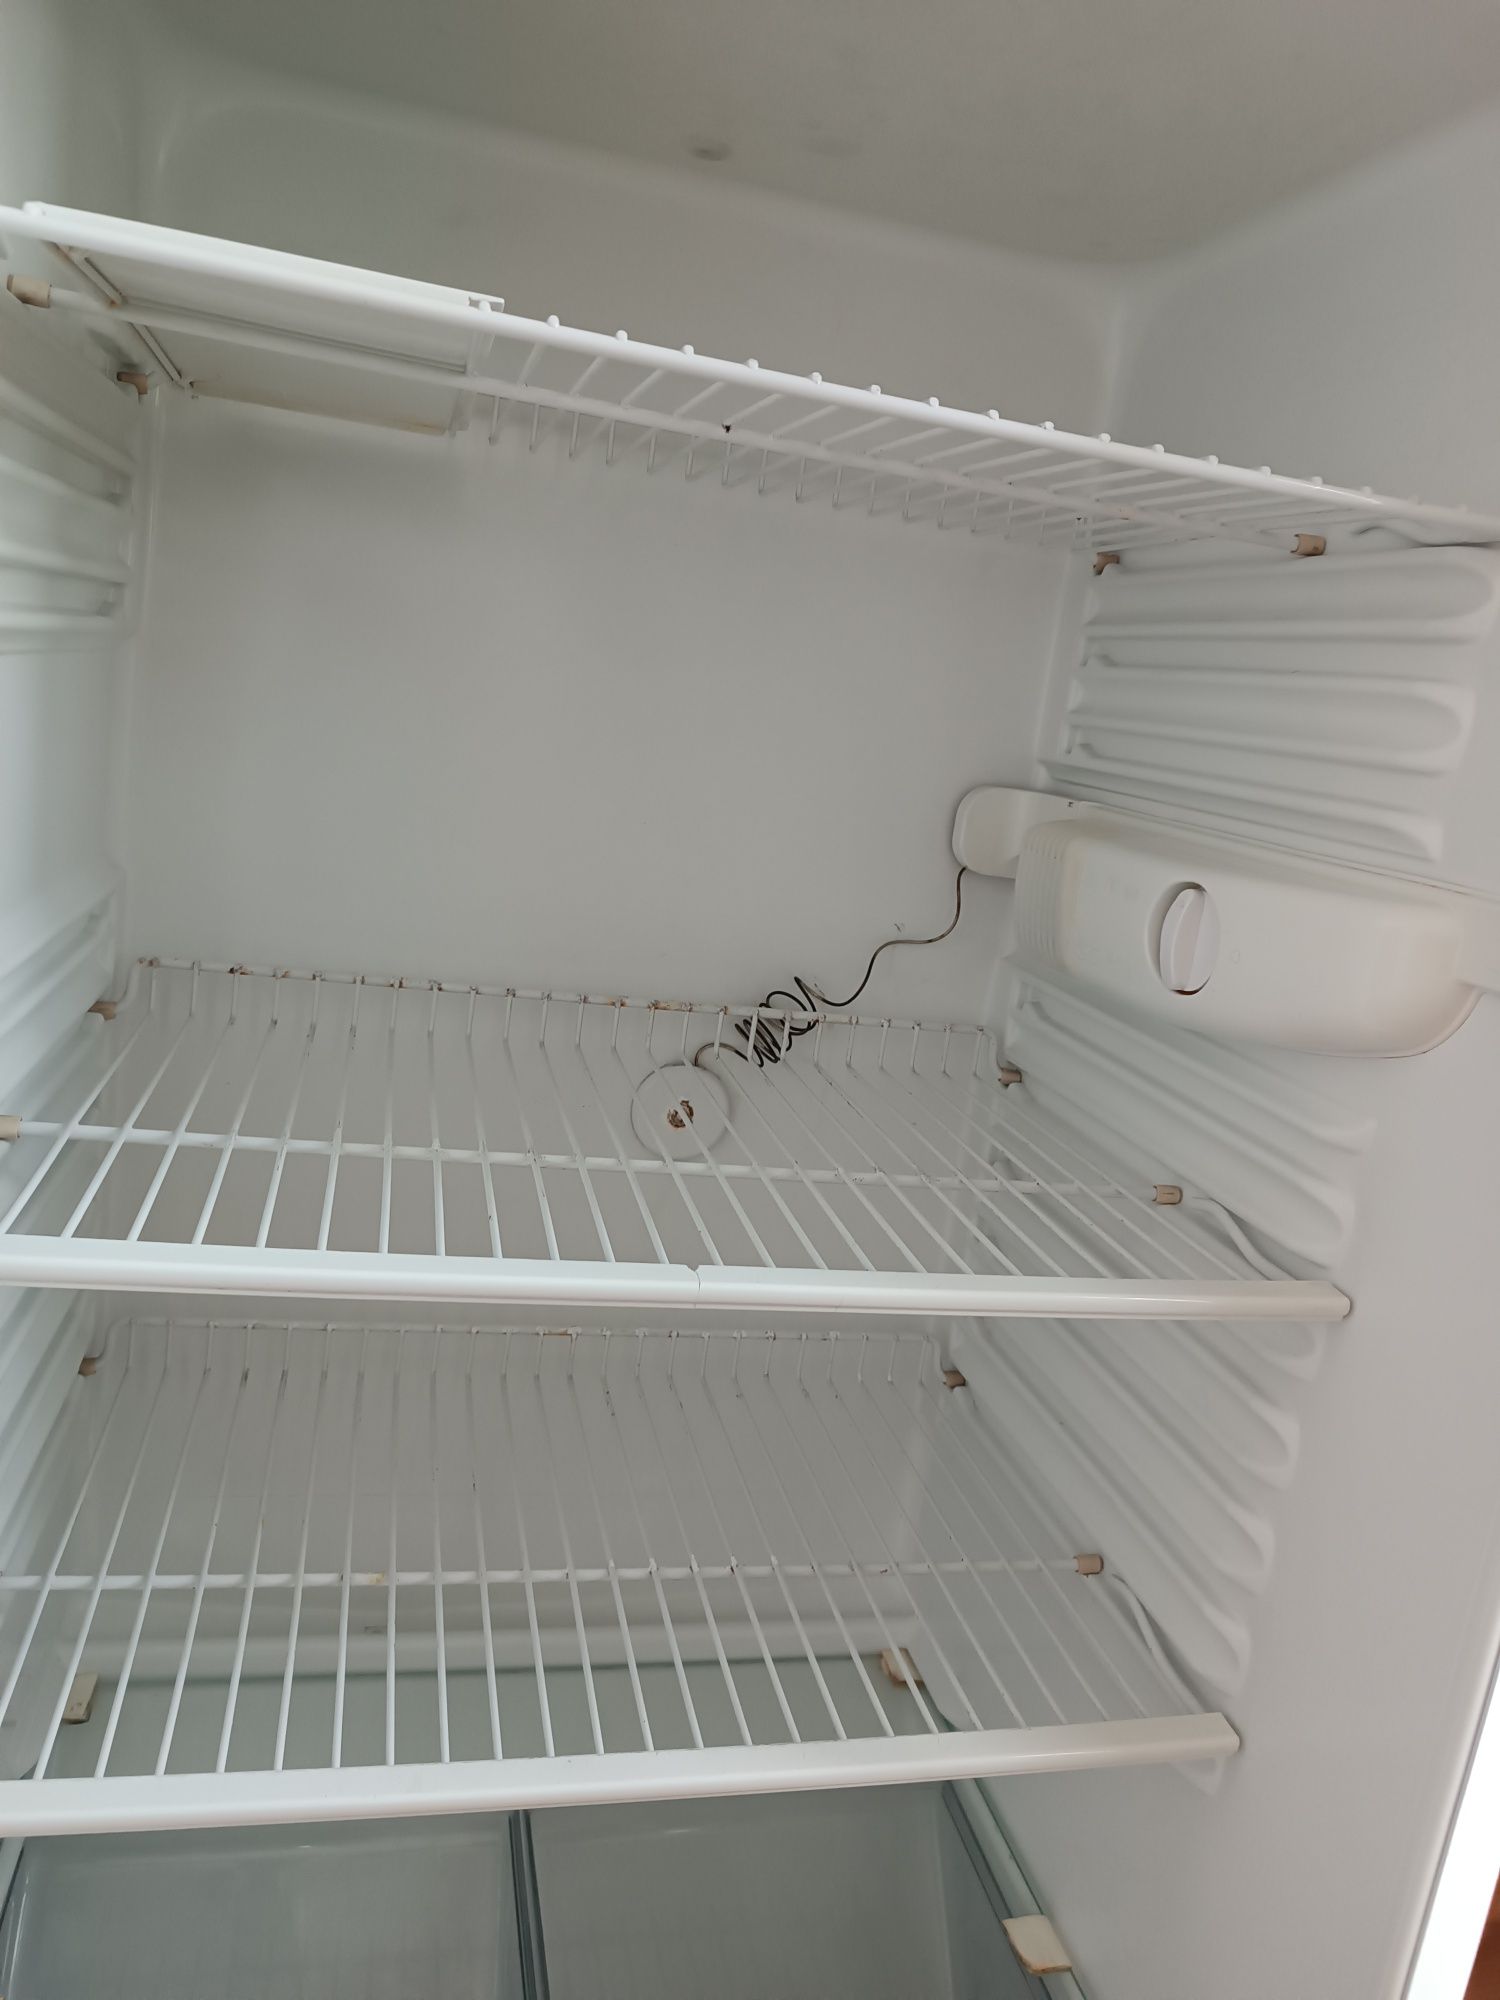 Продам холодильник двухкамерный (Минск).